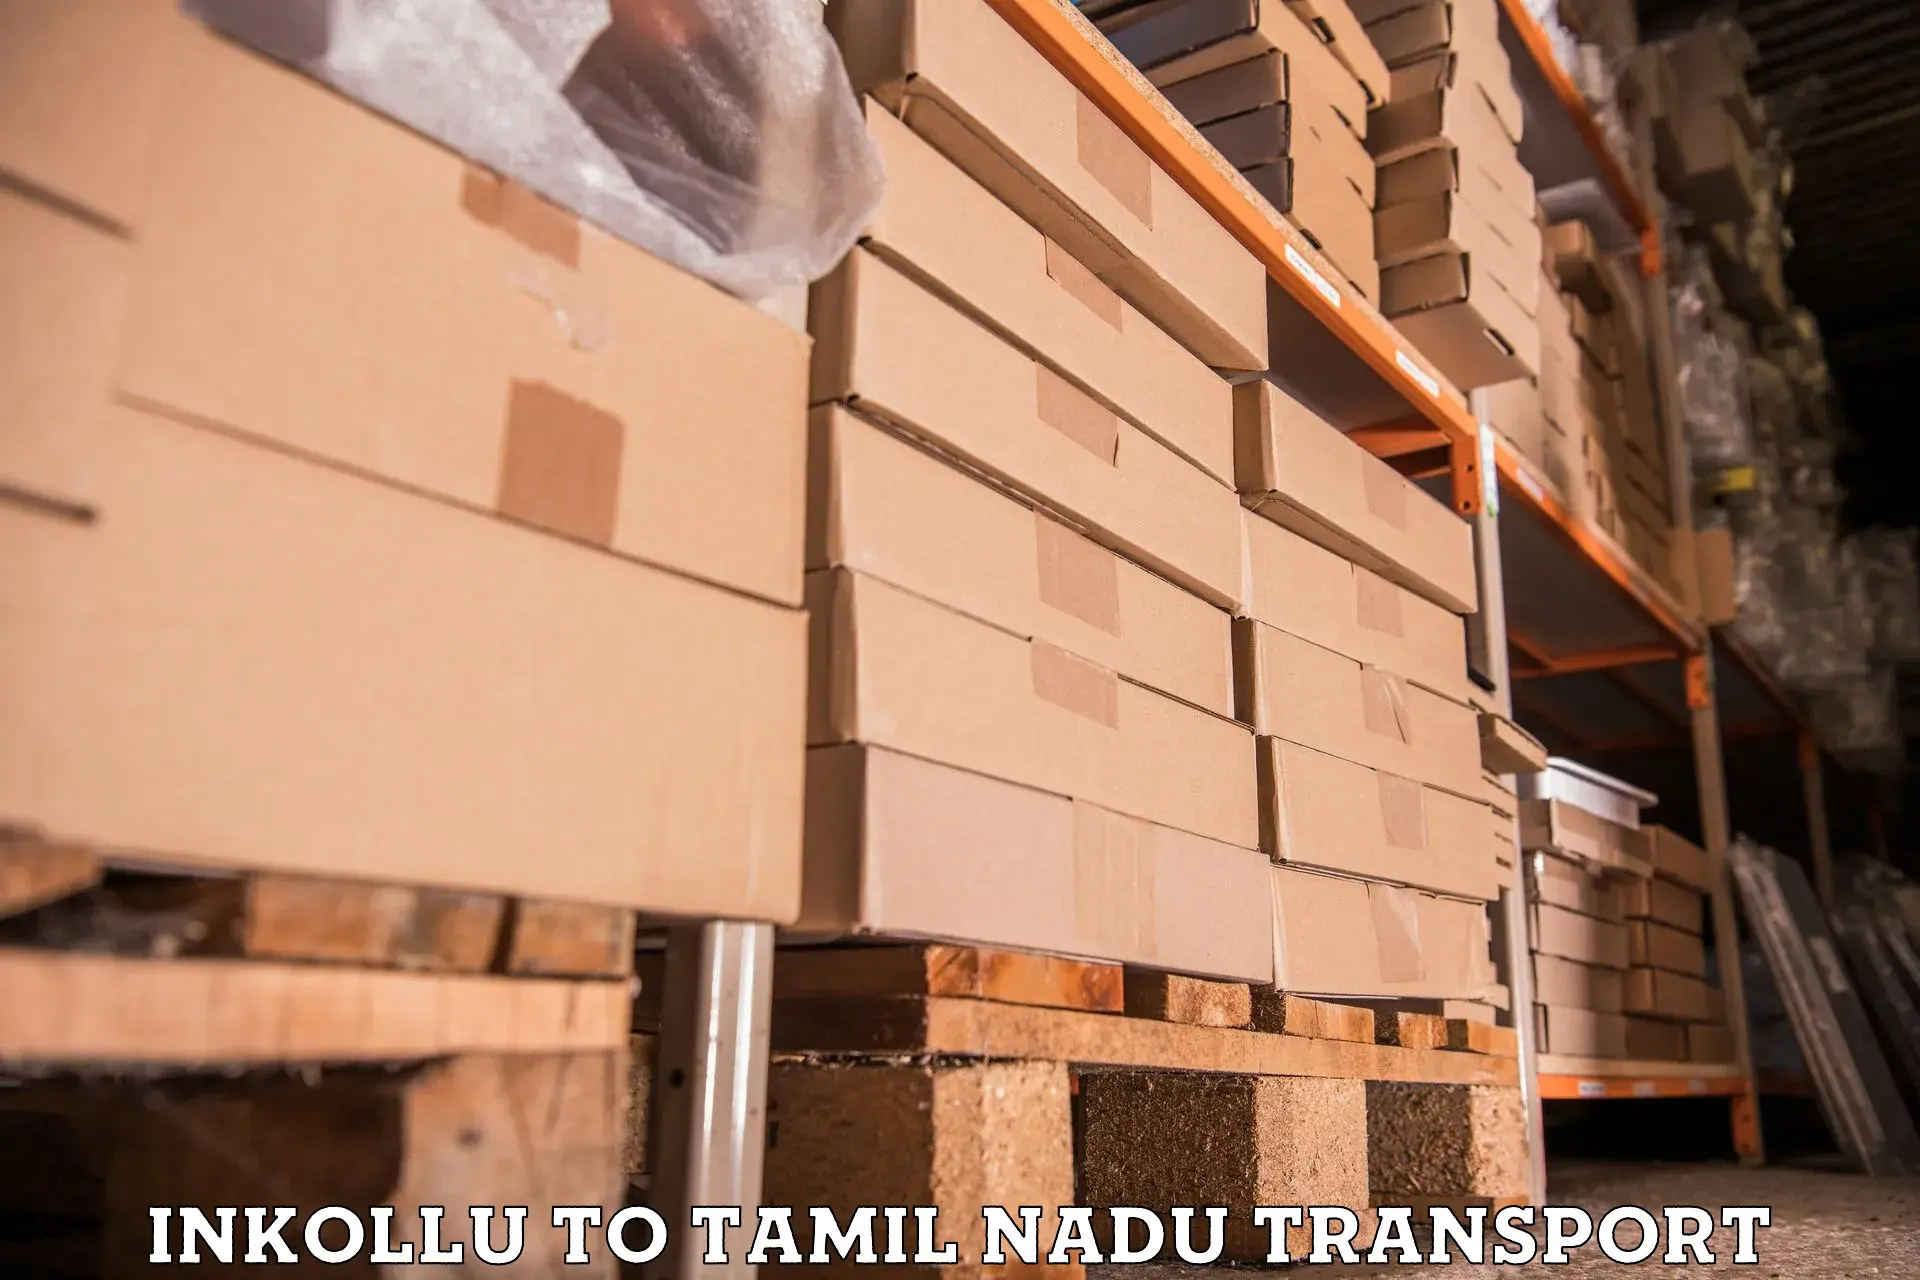 Transport in sharing Inkollu to Tamil Nadu